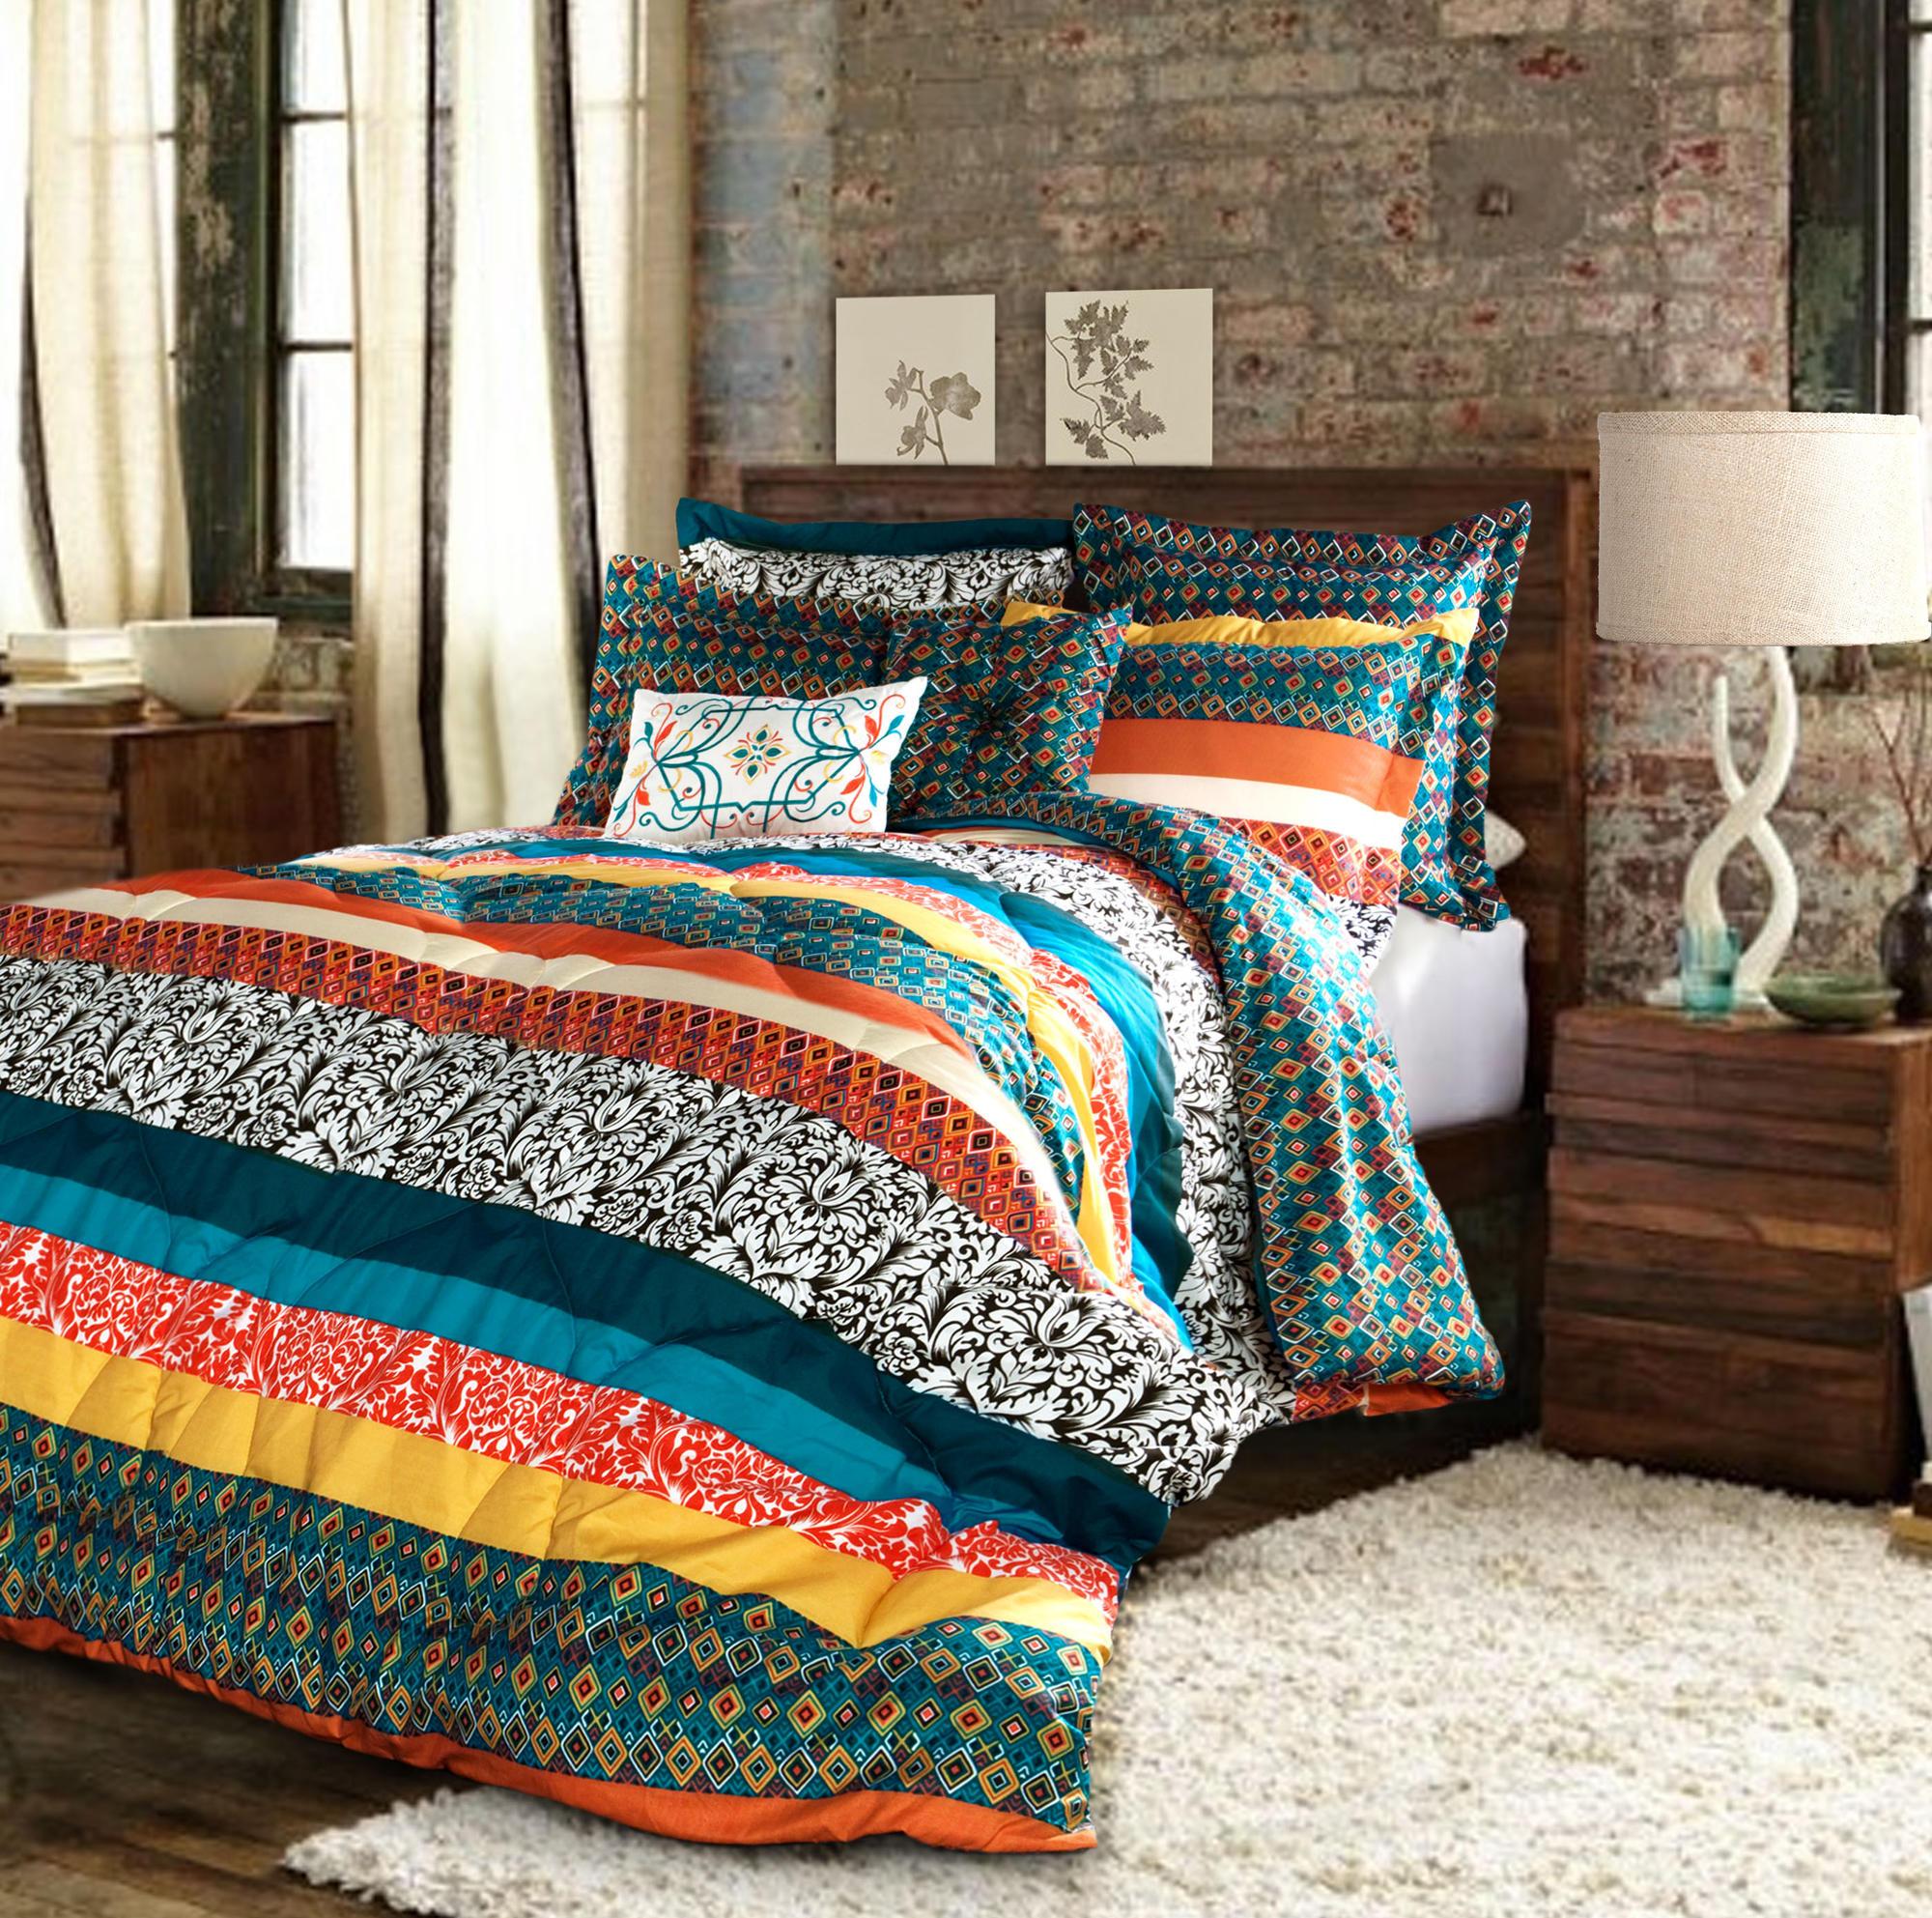 Спальня в бохо стиле с ярким постельным бельем